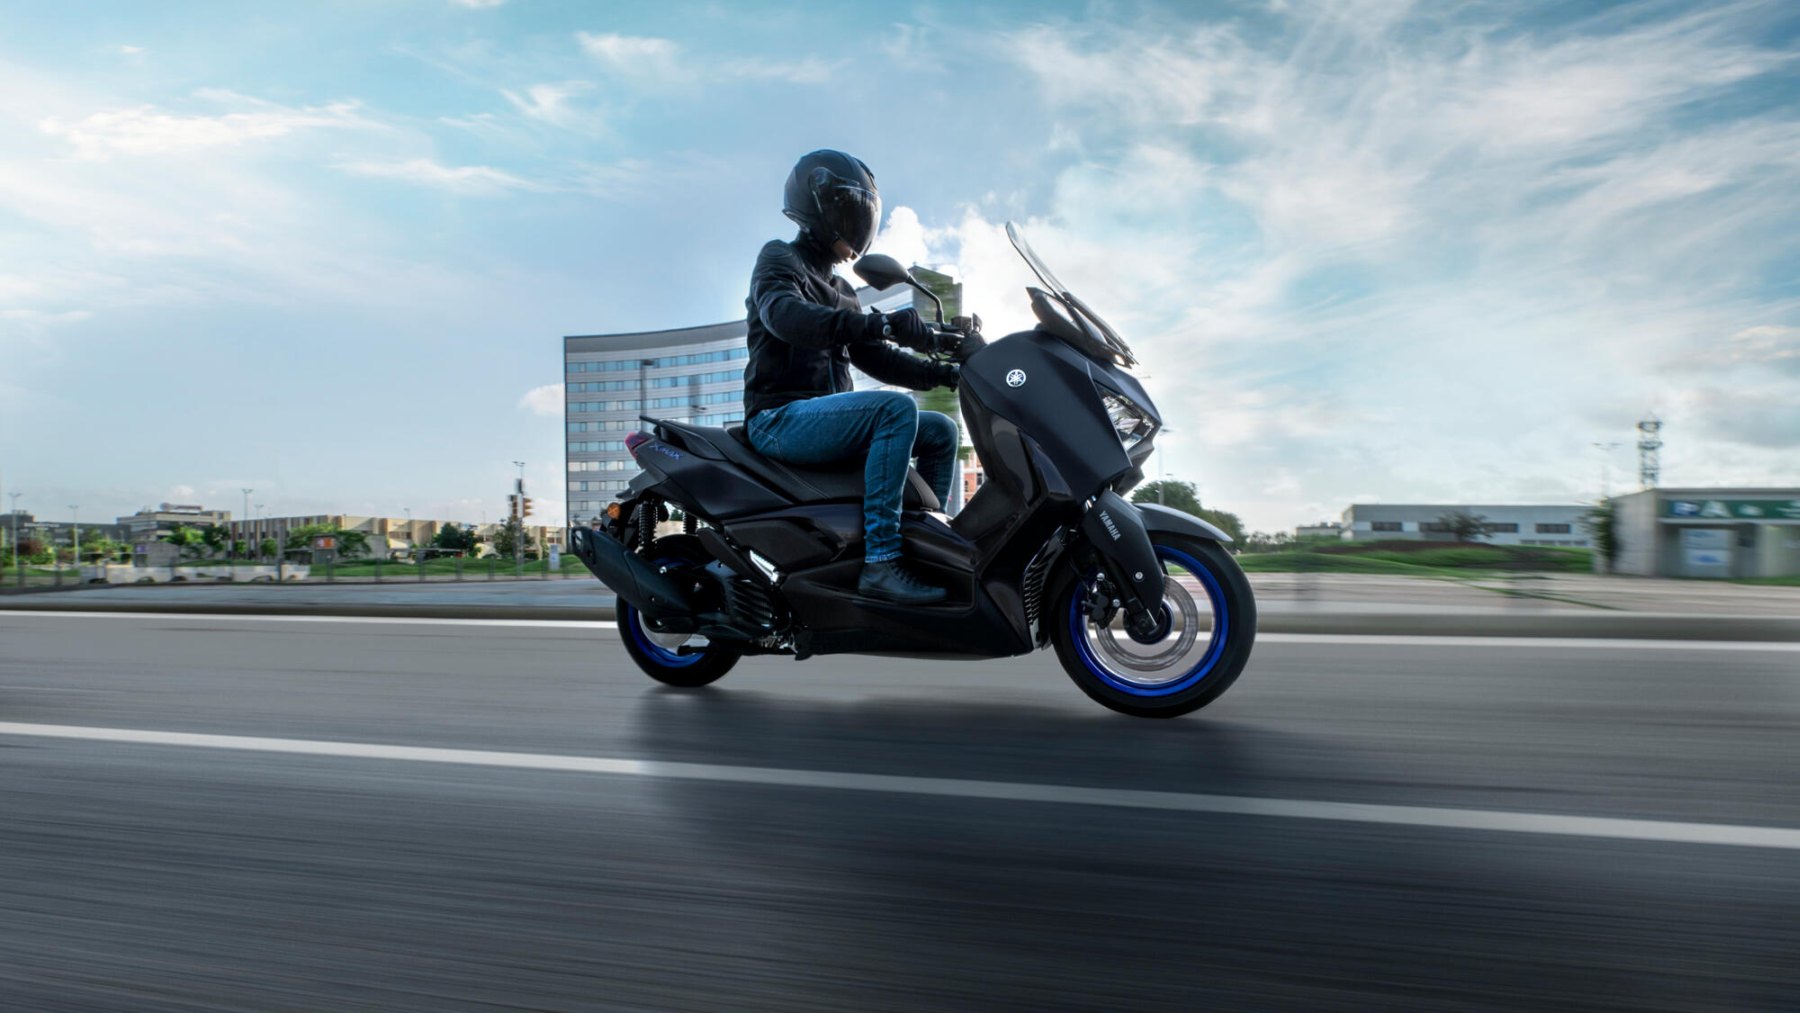 Yamaha X-Max 125cc en acción, mostrando su perfil y diseño aerodinámico.